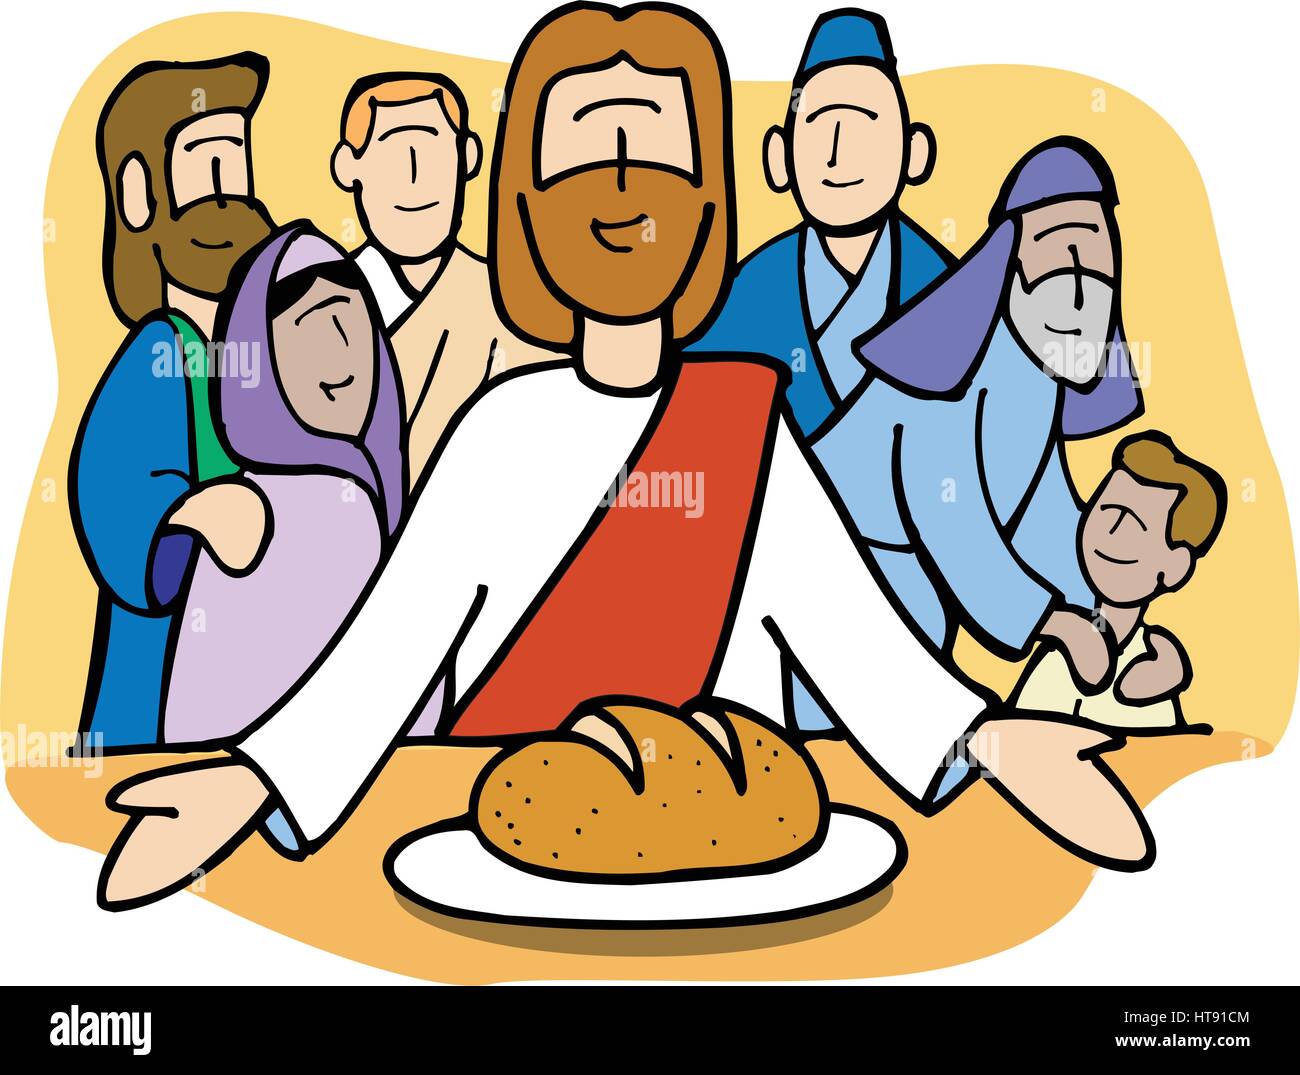 Jesus teilt das Brot. Er erklärte auch: "Ich bin das Brot des Lebens. Jesus nahm Brot und segnete es. 'Nimm das und iß es, denn das ist mein Leib.' Stock Vektor